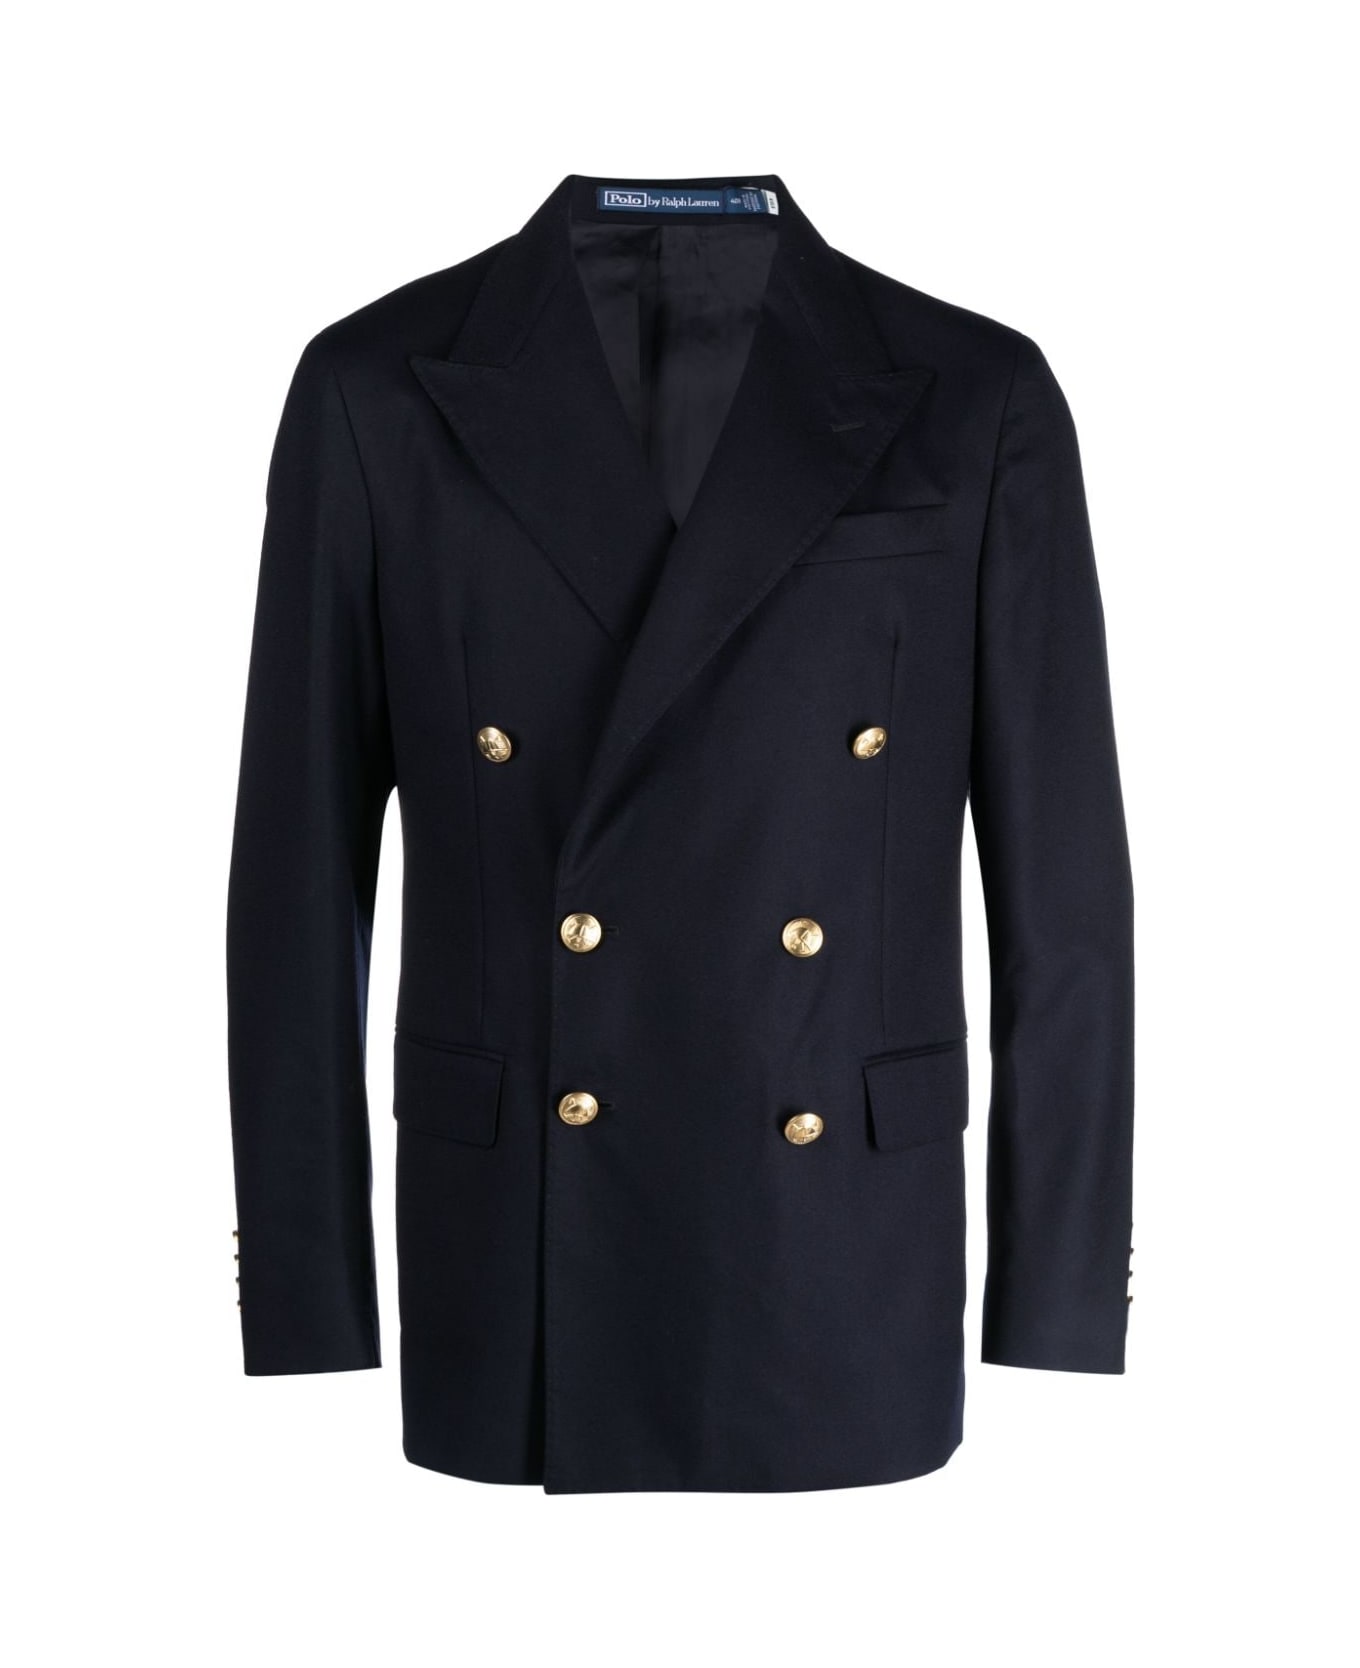 Polo Ralph Lauren Sportcoat - Navy